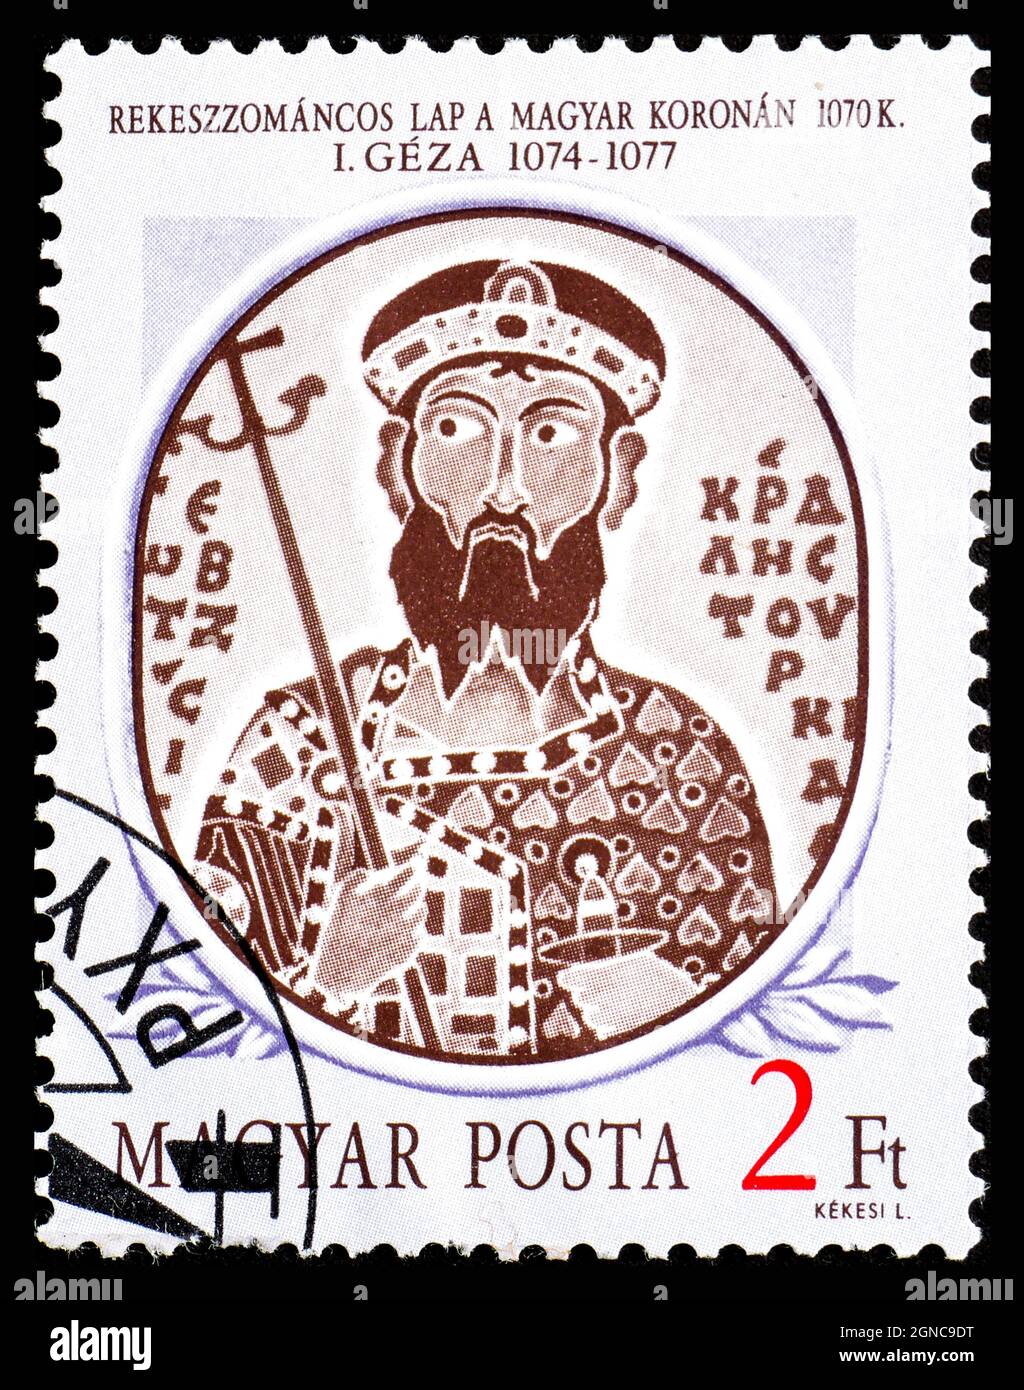 HONGRIE - VERS 1986 : un timbre imprimé en Hongrie à partir du 1er numéro des rois hongrois montre le portrait en émail de Geza i sur la couronne hongroise, 1070 Banque D'Images